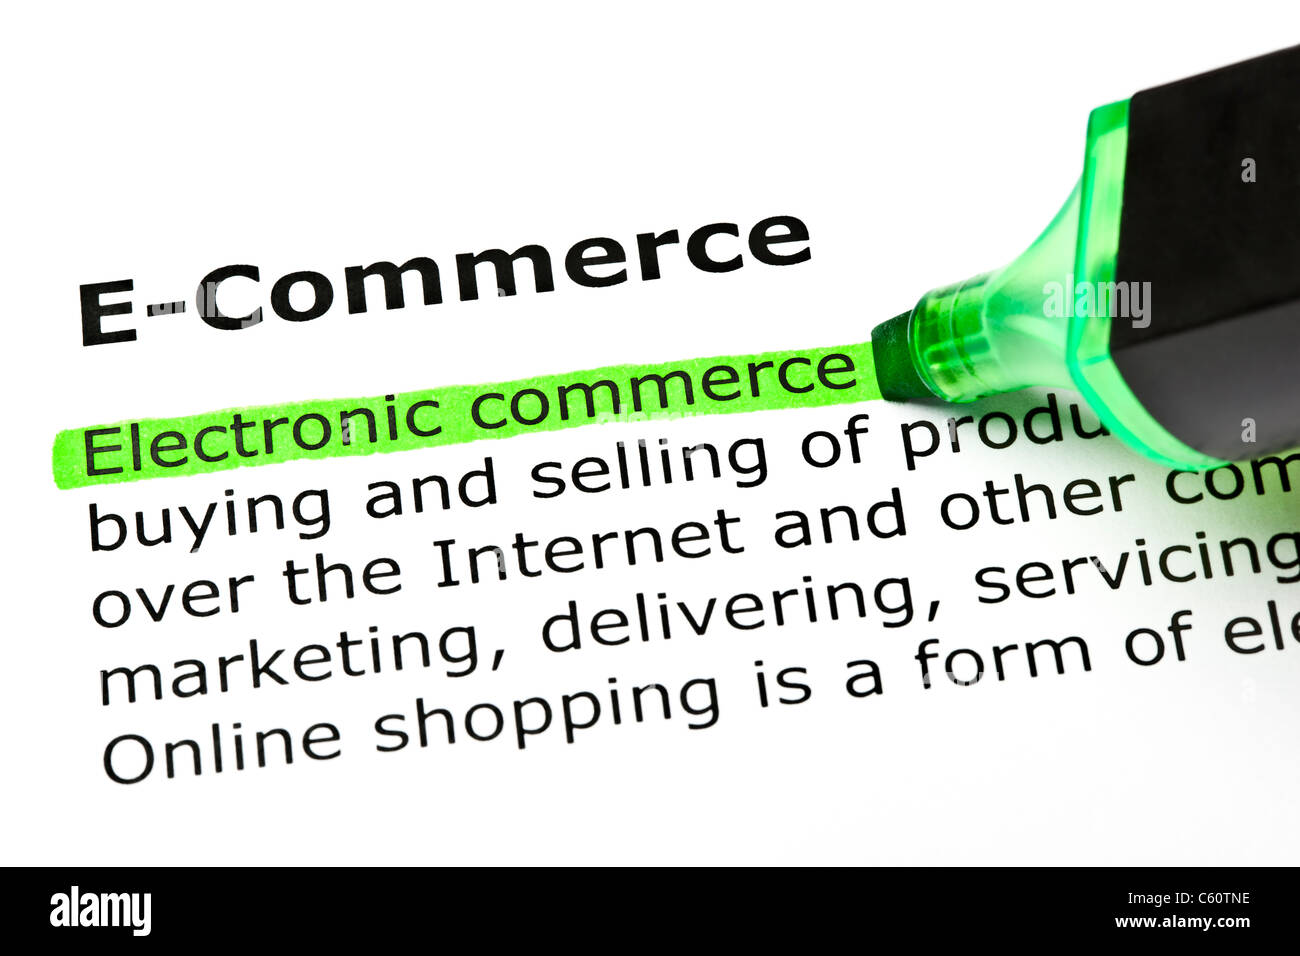 "Comercio electrónico" resaltada en verde, bajo el título de 'E-Commerce' Foto de stock